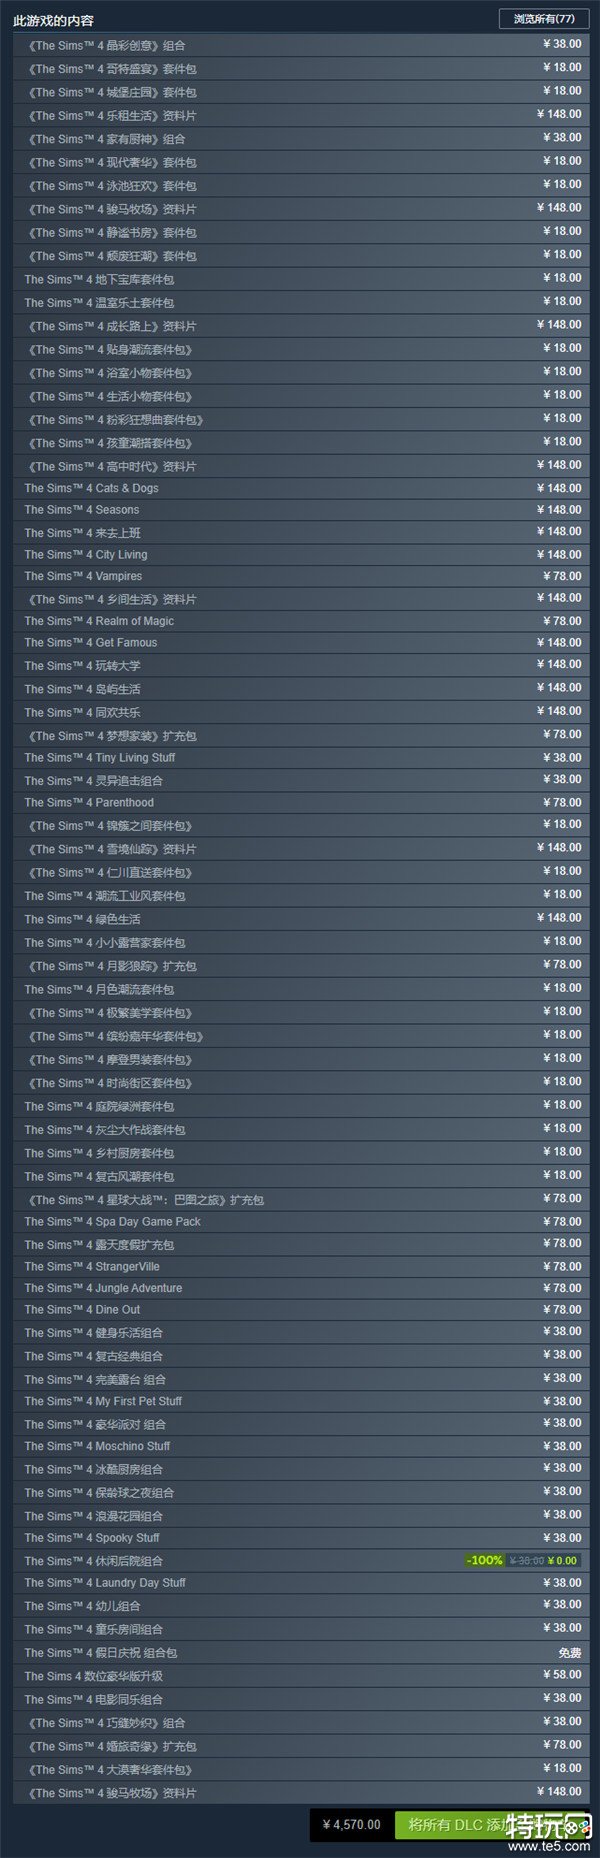 《模拟人生4》Steam免费游玩 购买所有DLC需4570元